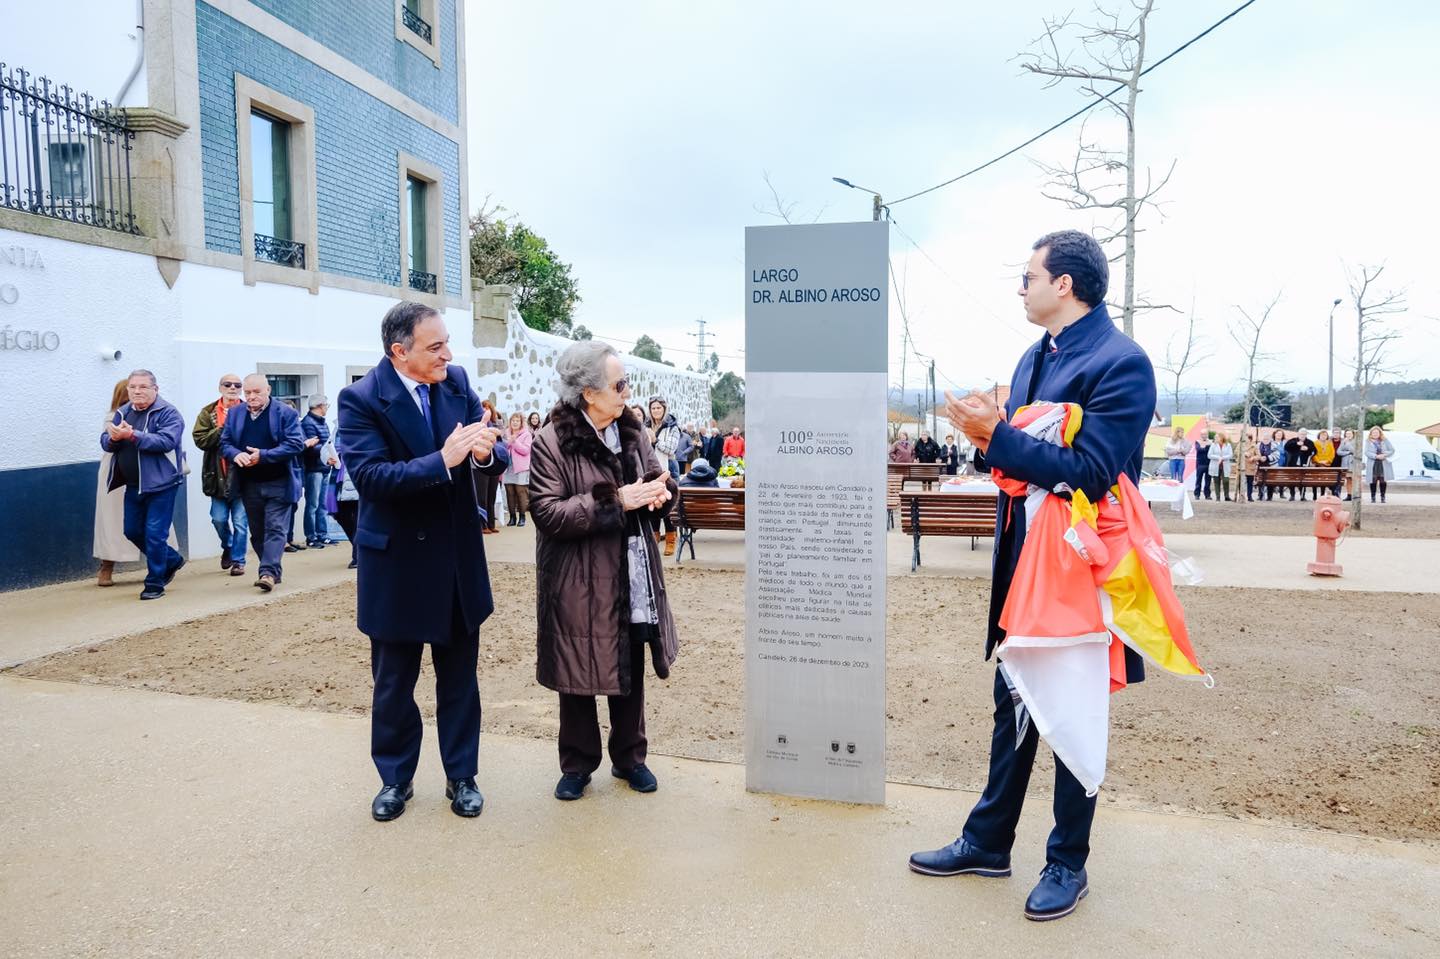 Inaugurado Largo Albino Aroso no encerramento das comemorações dos 100 anos do nascimento do médico